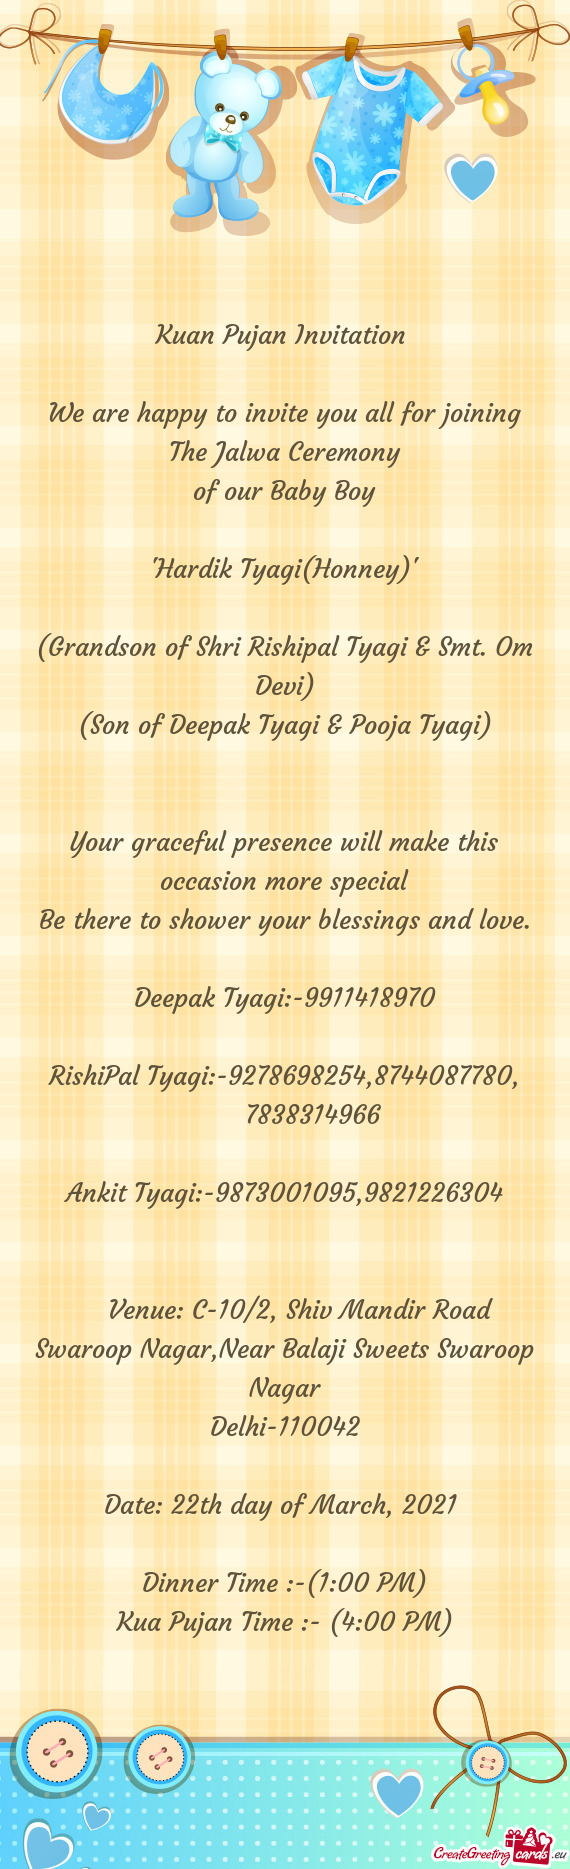 Deepak Tyagi:-9911418970